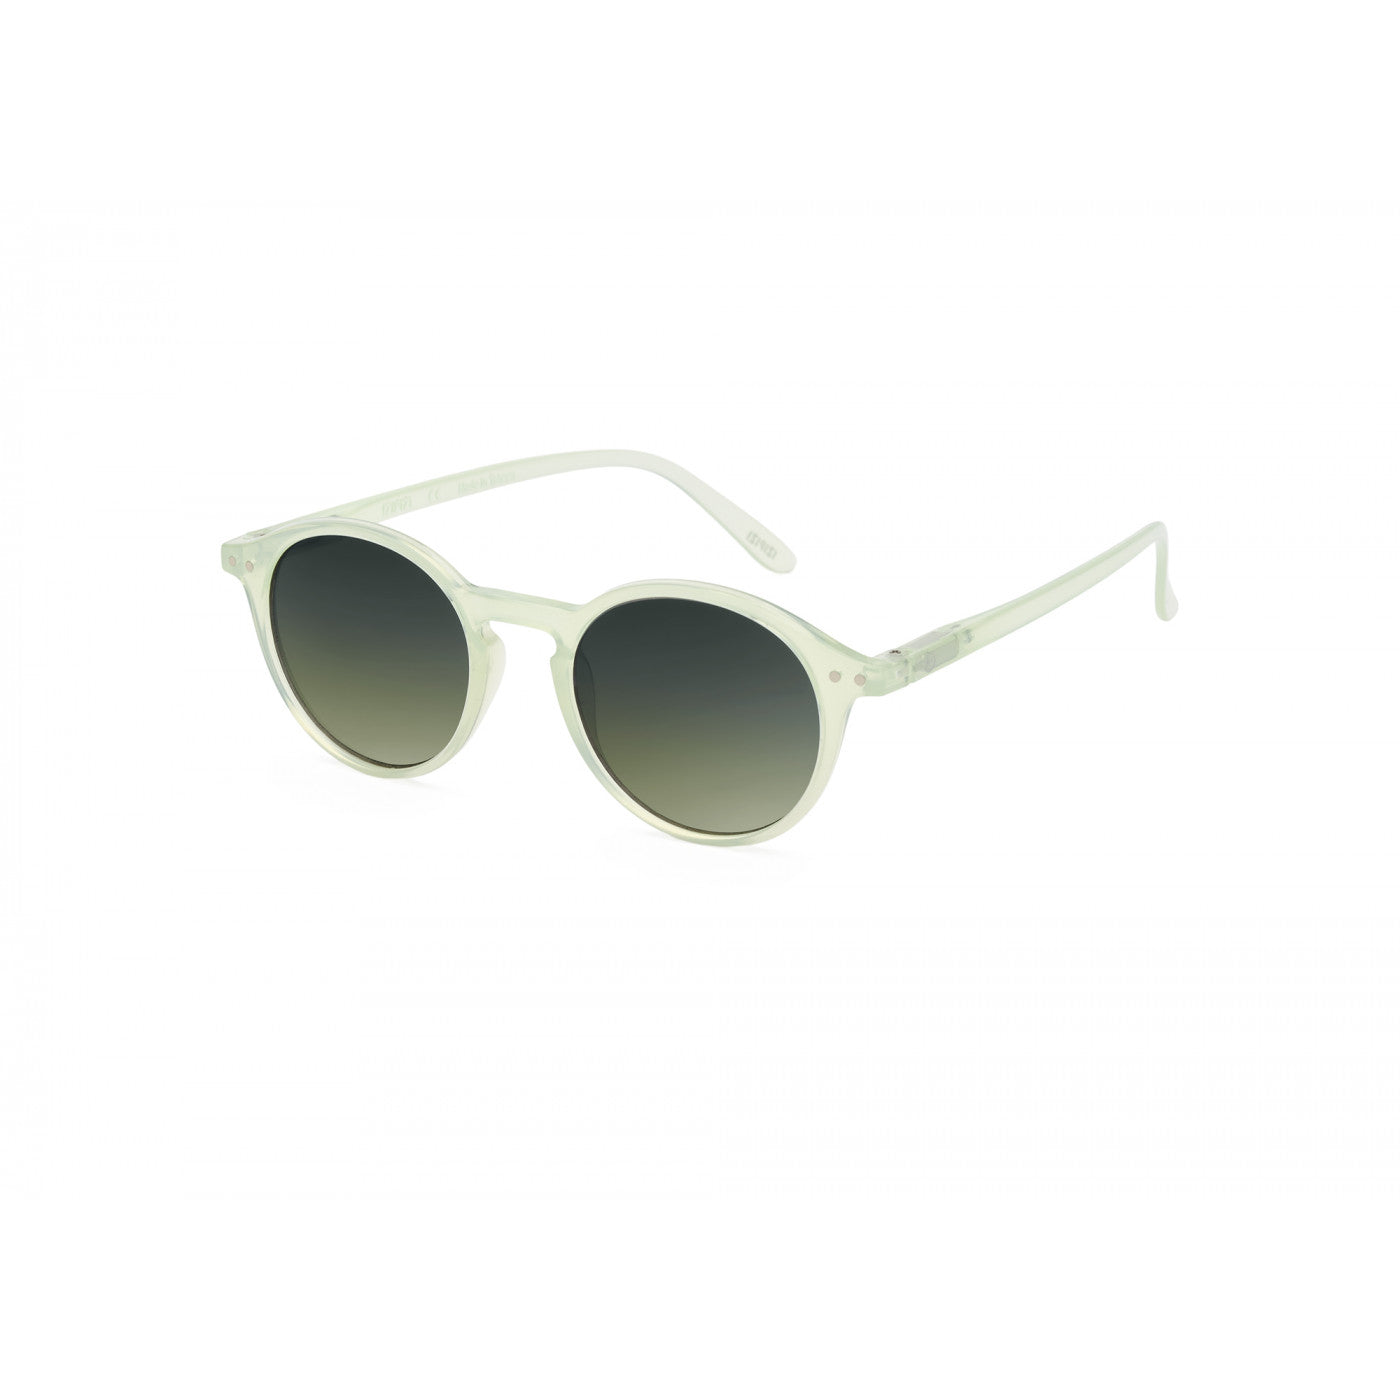 Sunglasses  - #D Quiet Green